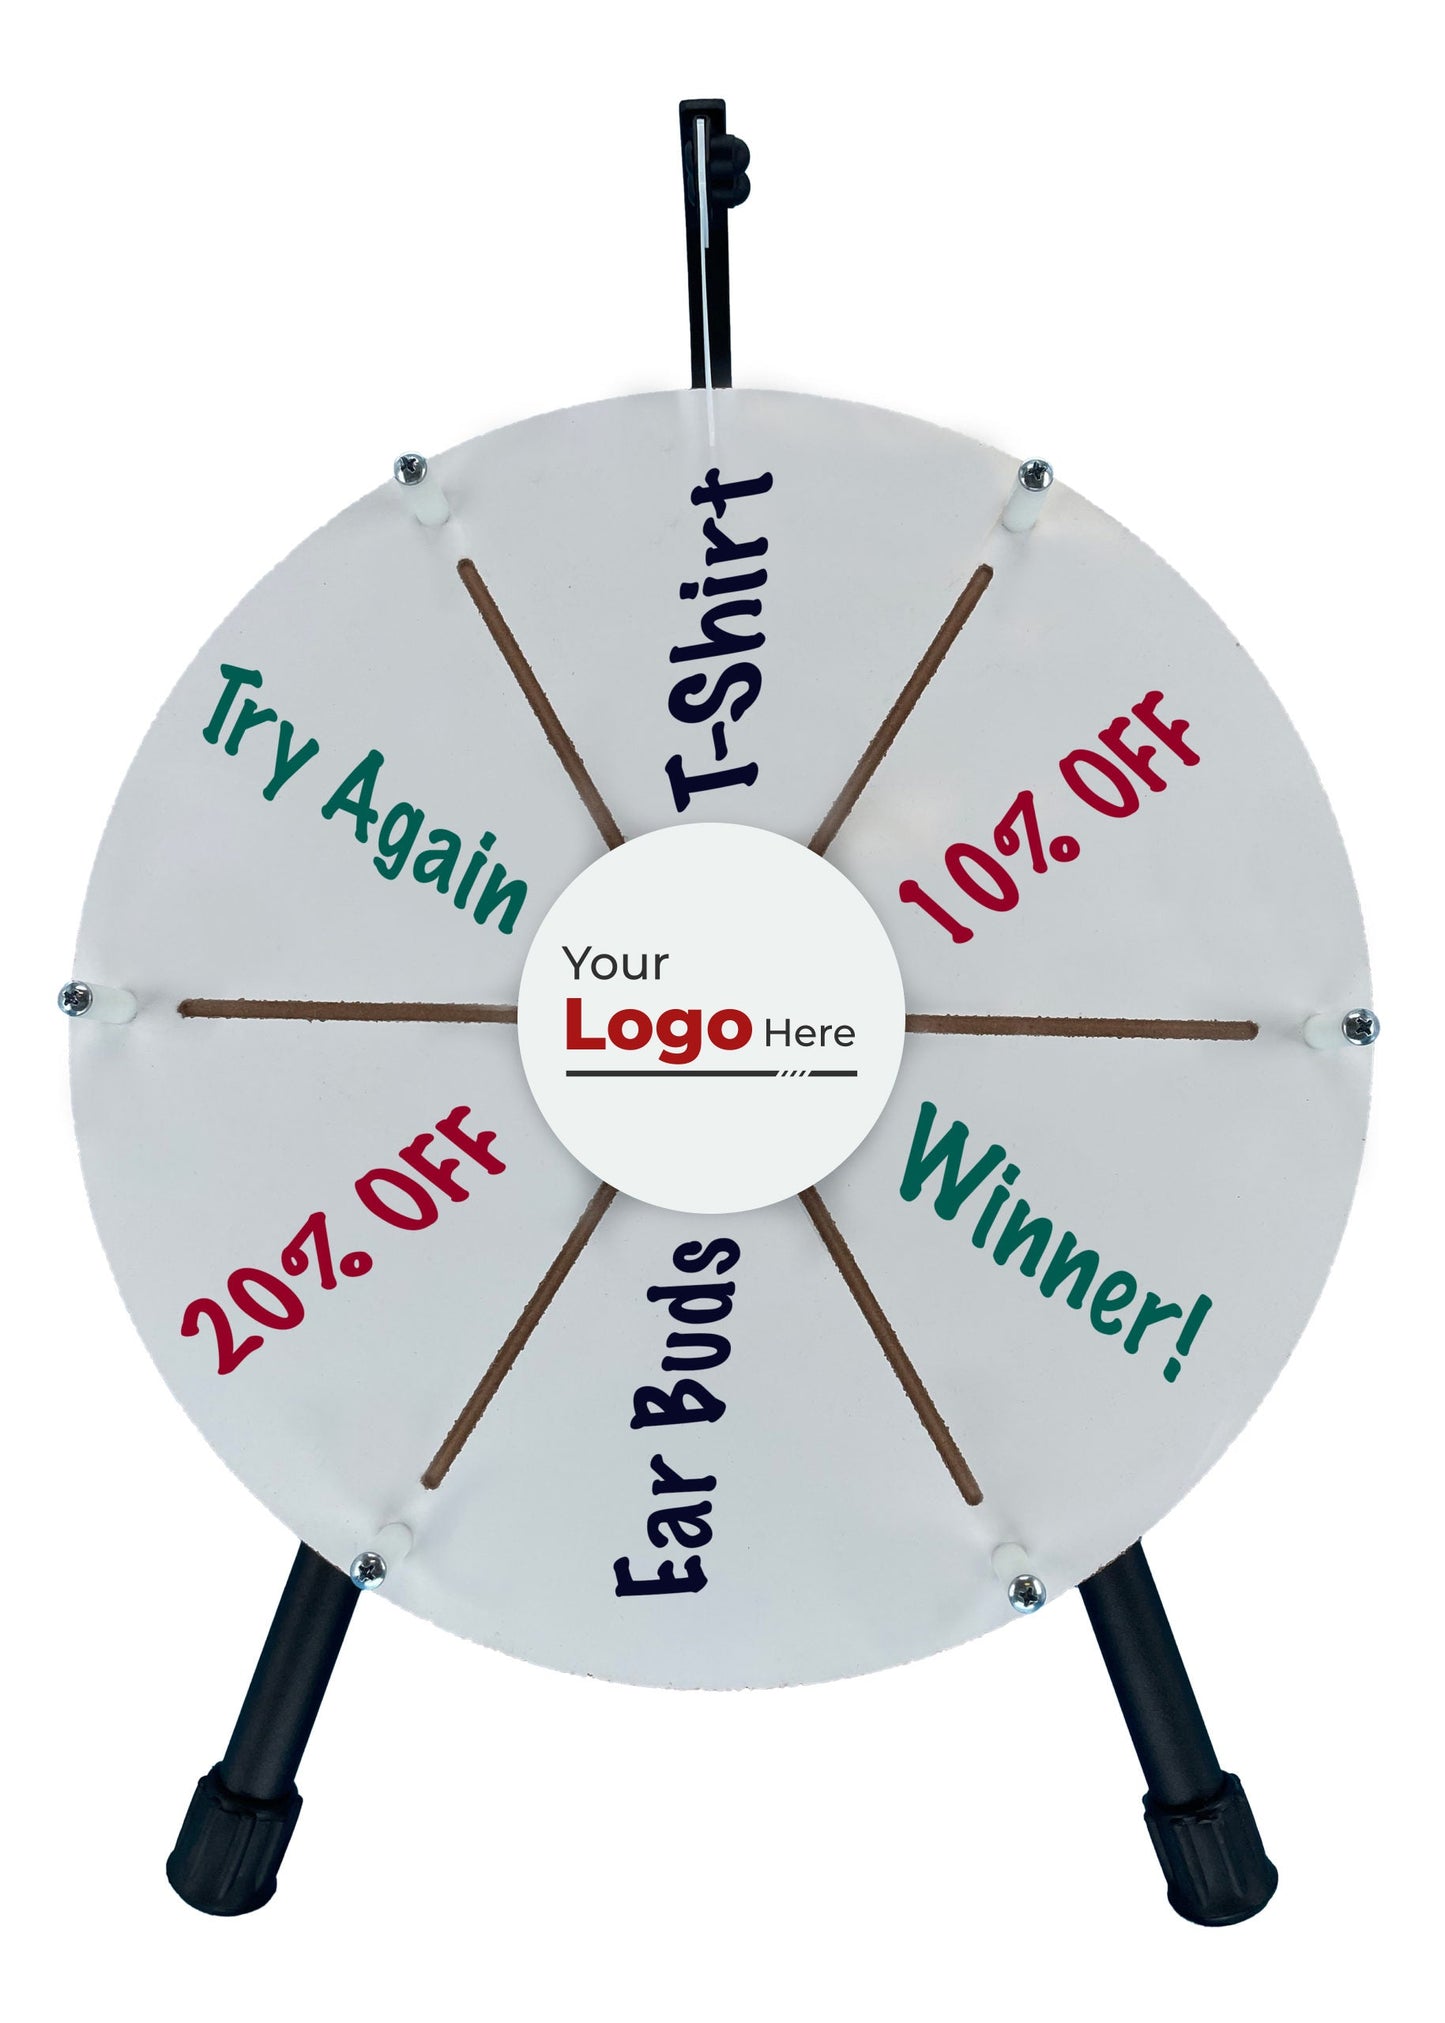 Micro Dry Erase Prize Wheel